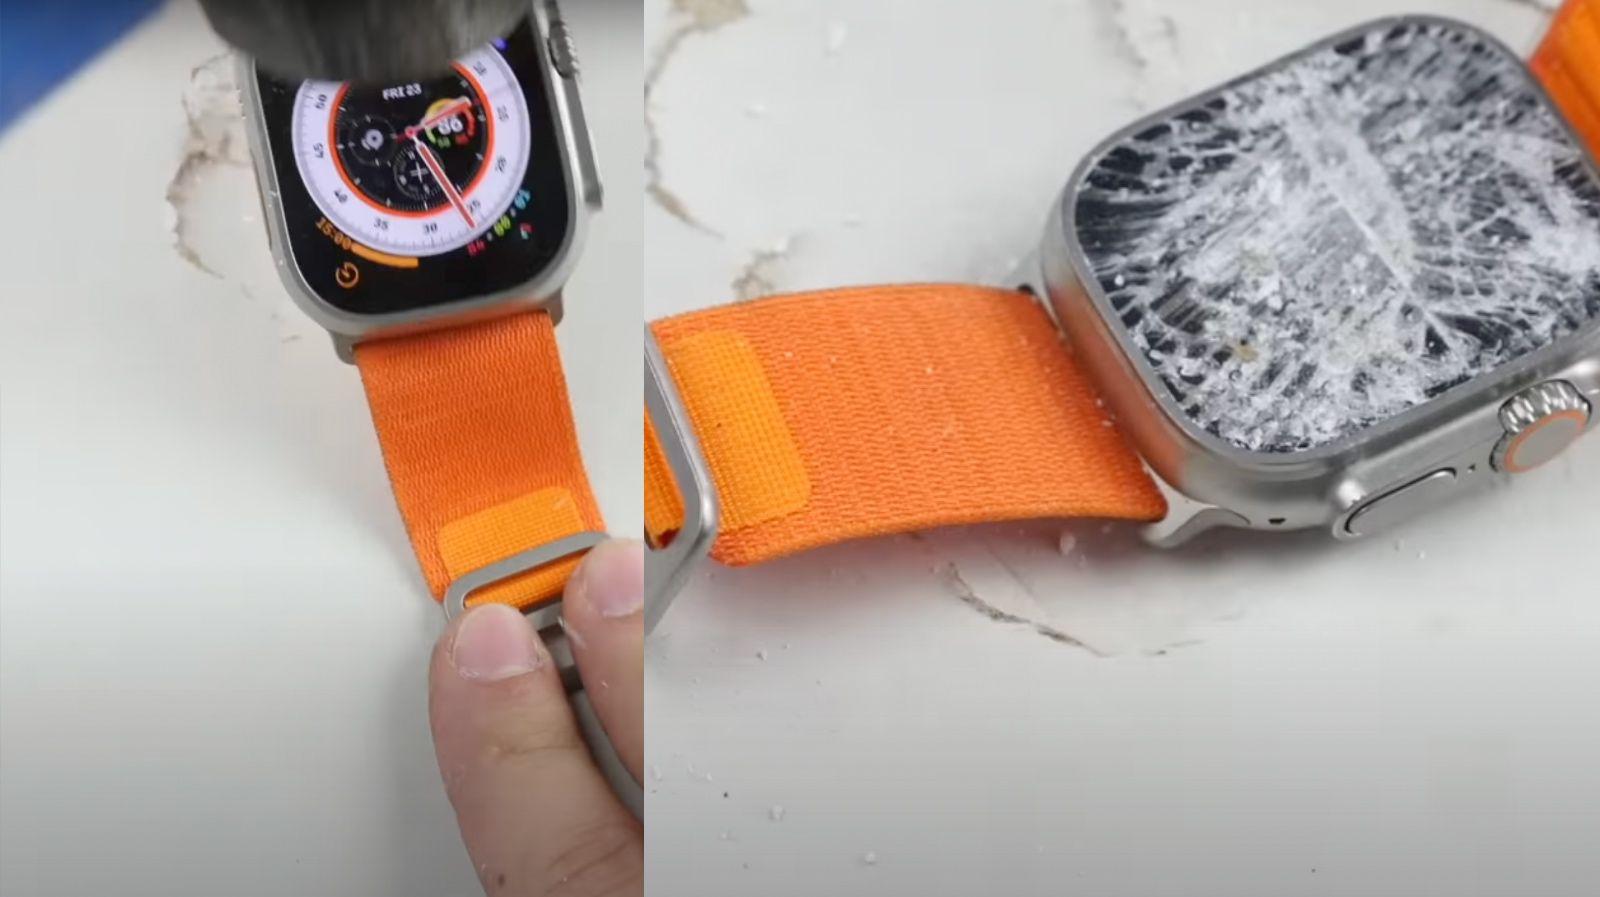 Ютубер протестировал прочность Apple Watch Ultra с помощью молотка. Стол сломался раньше